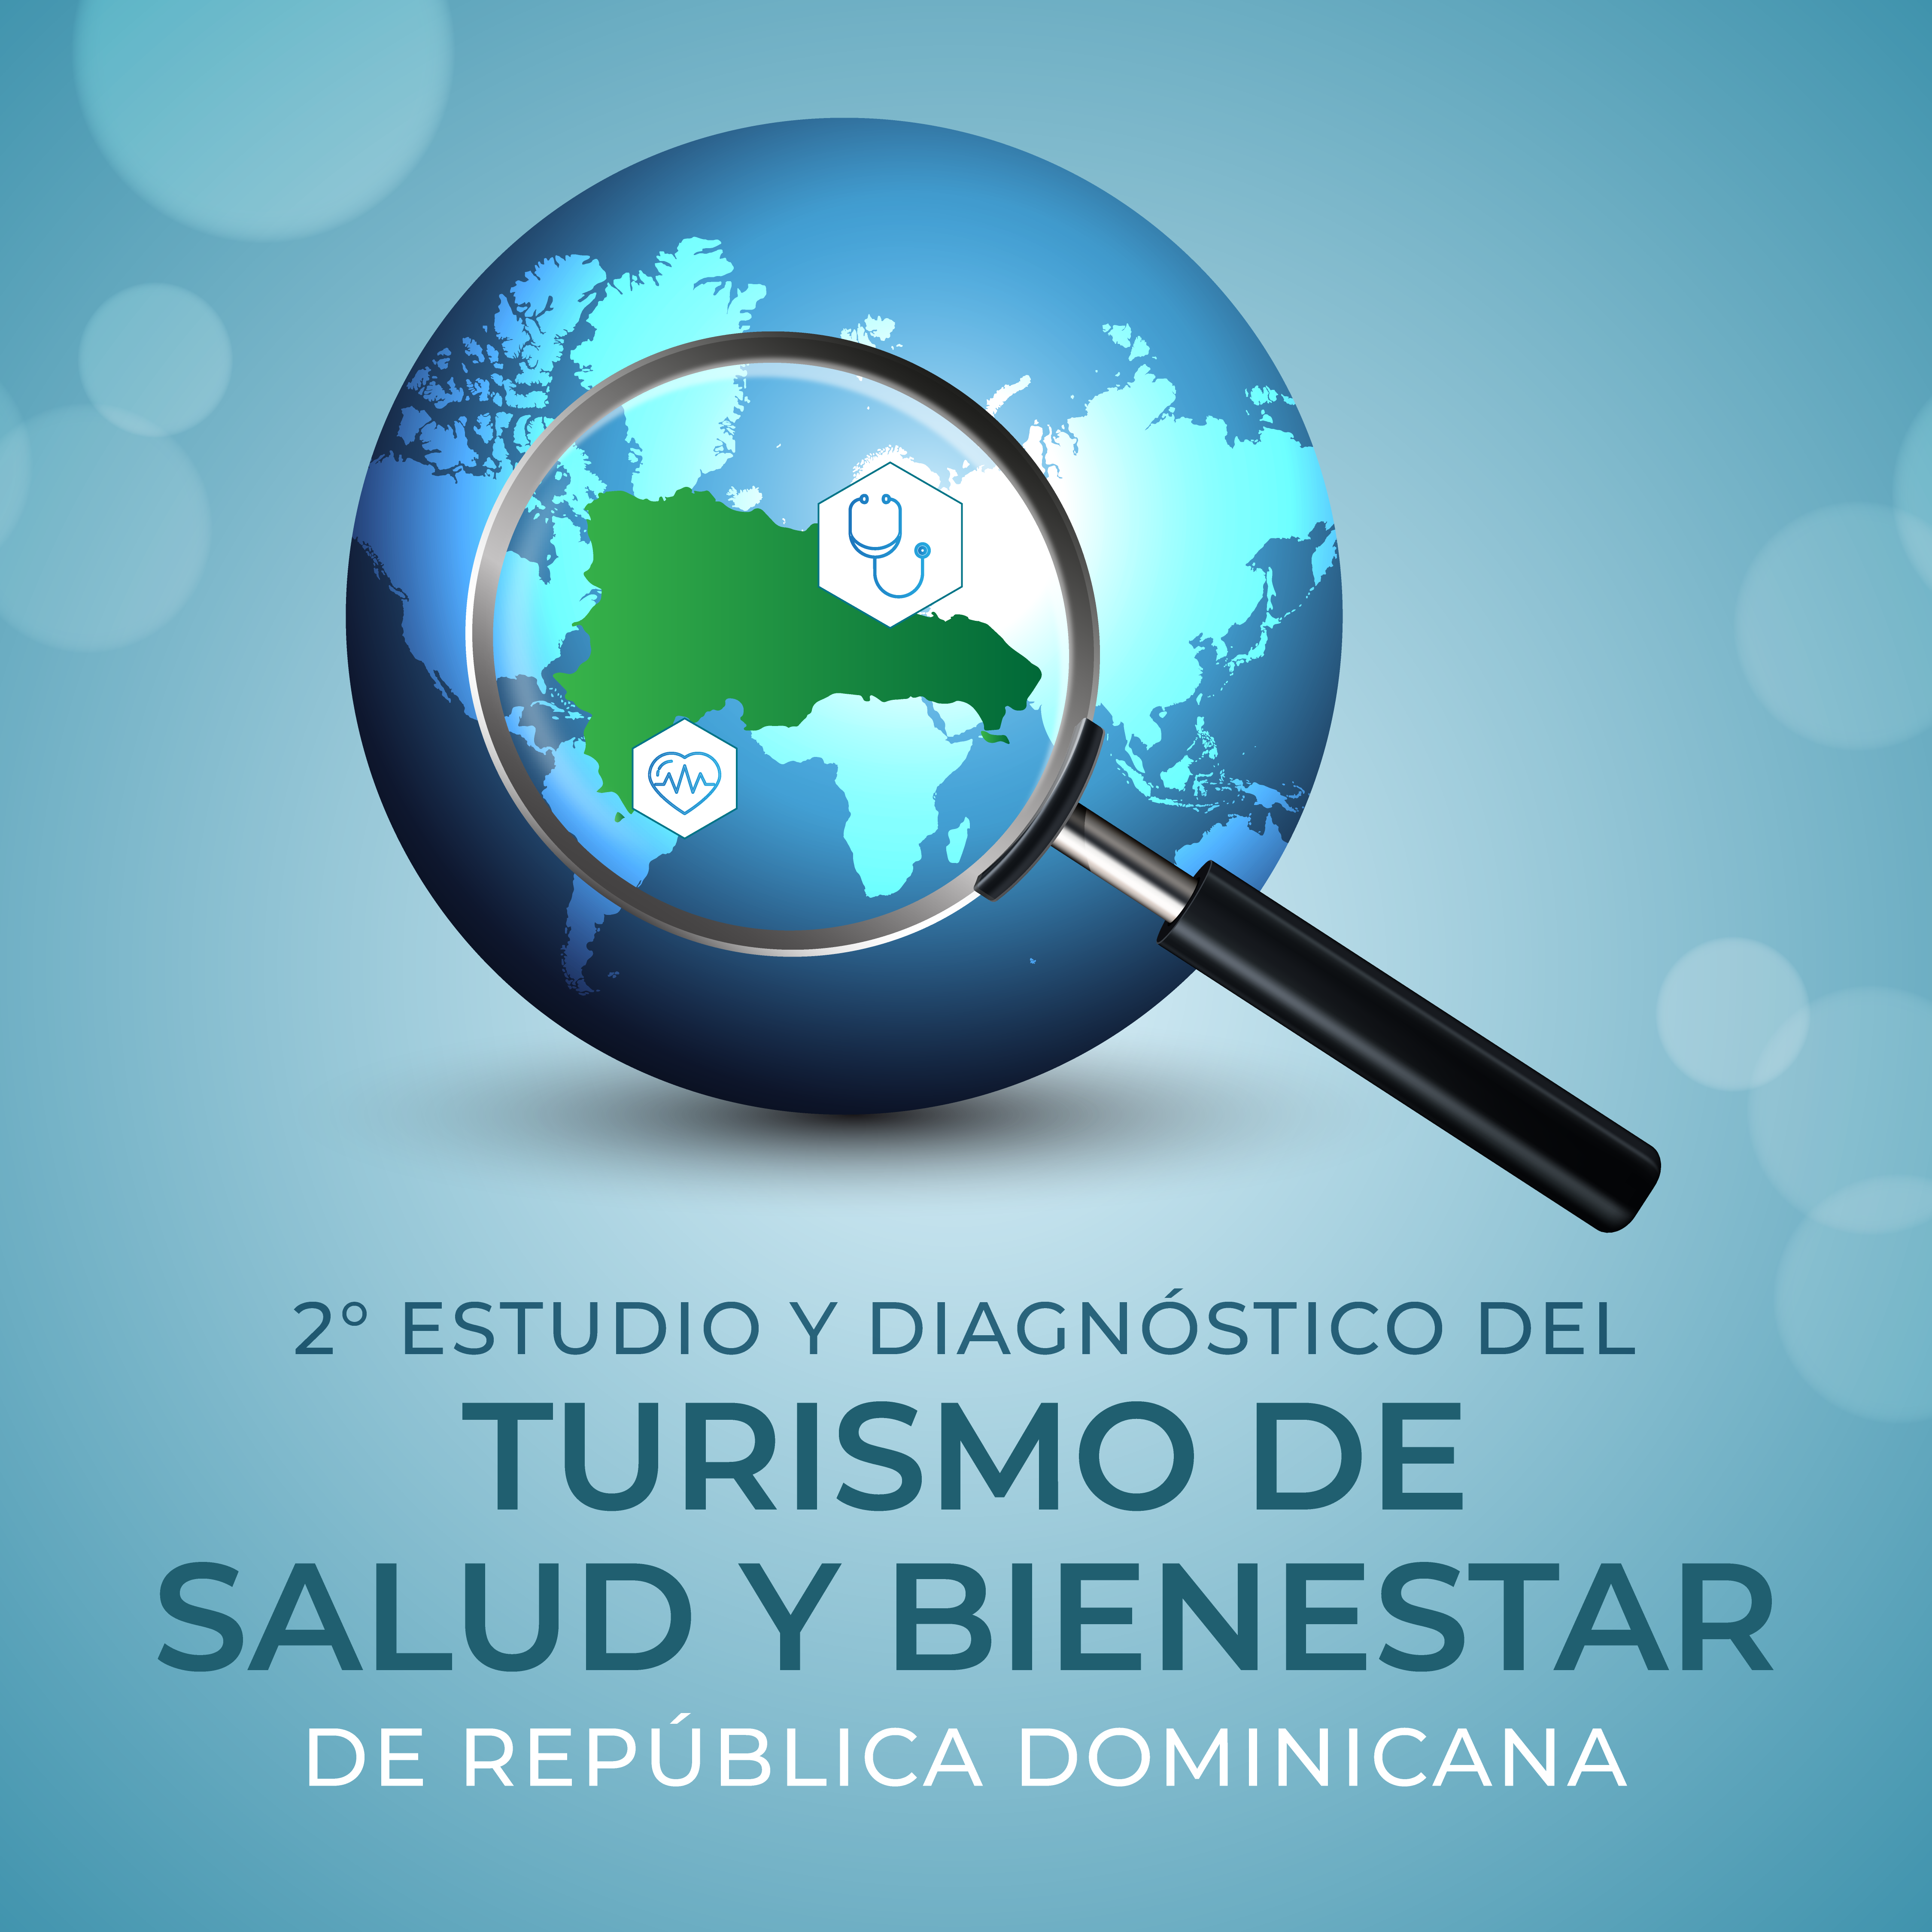 Realizarán segundo Estudio y Diagnóstico de Turismo de Salud y Bienestar en República Dominicana